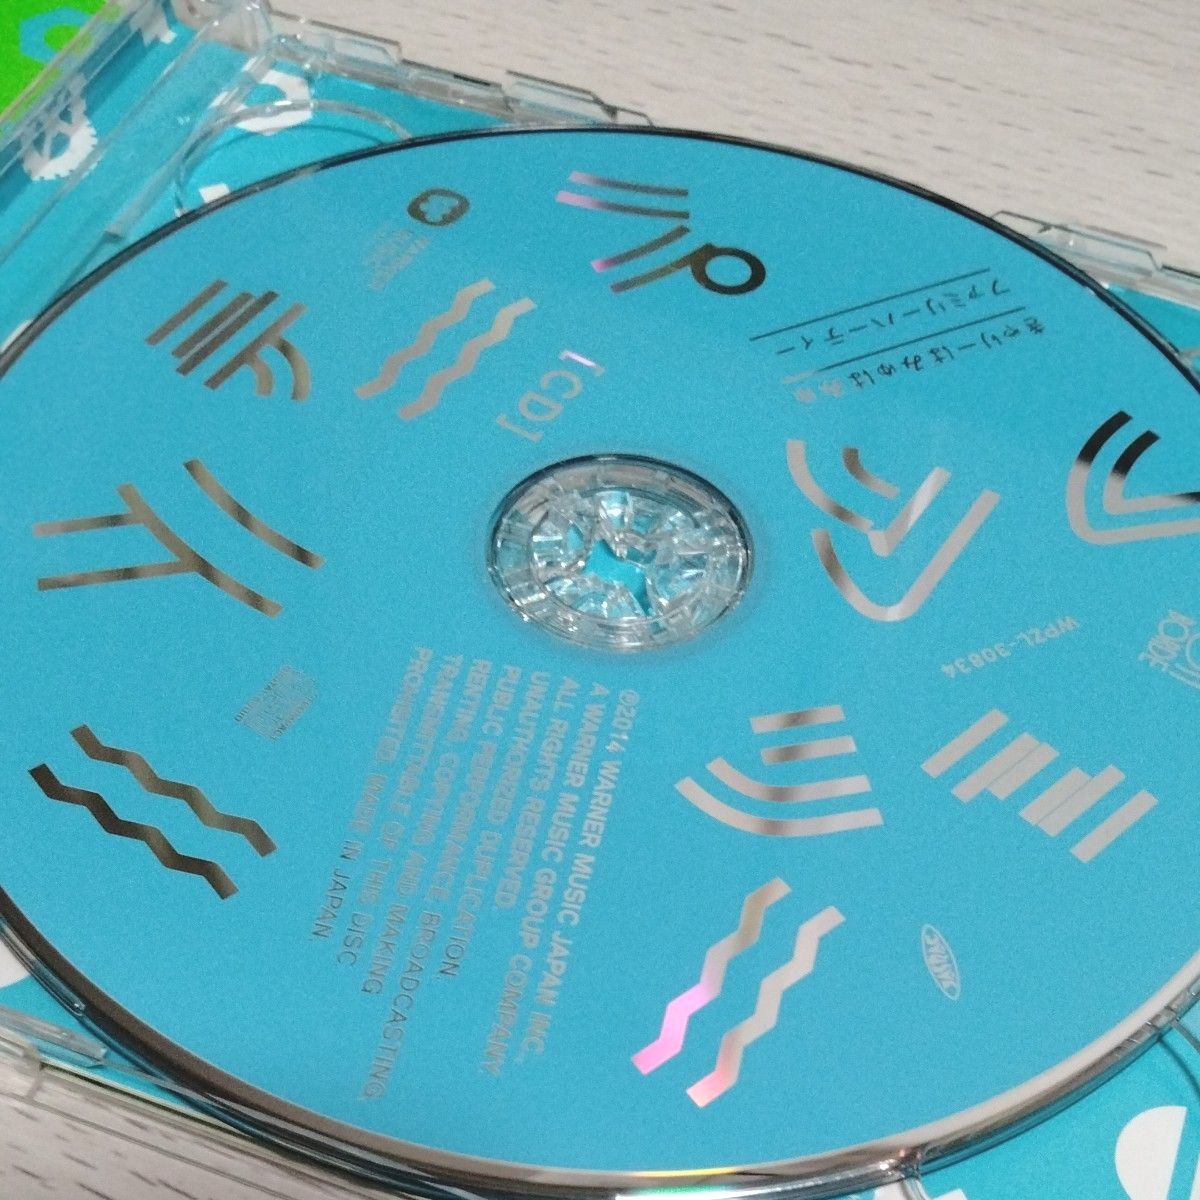 ファミリーパーティー 初回限定盤A きゃりーぱみゅぱみゅ CD DVD付 